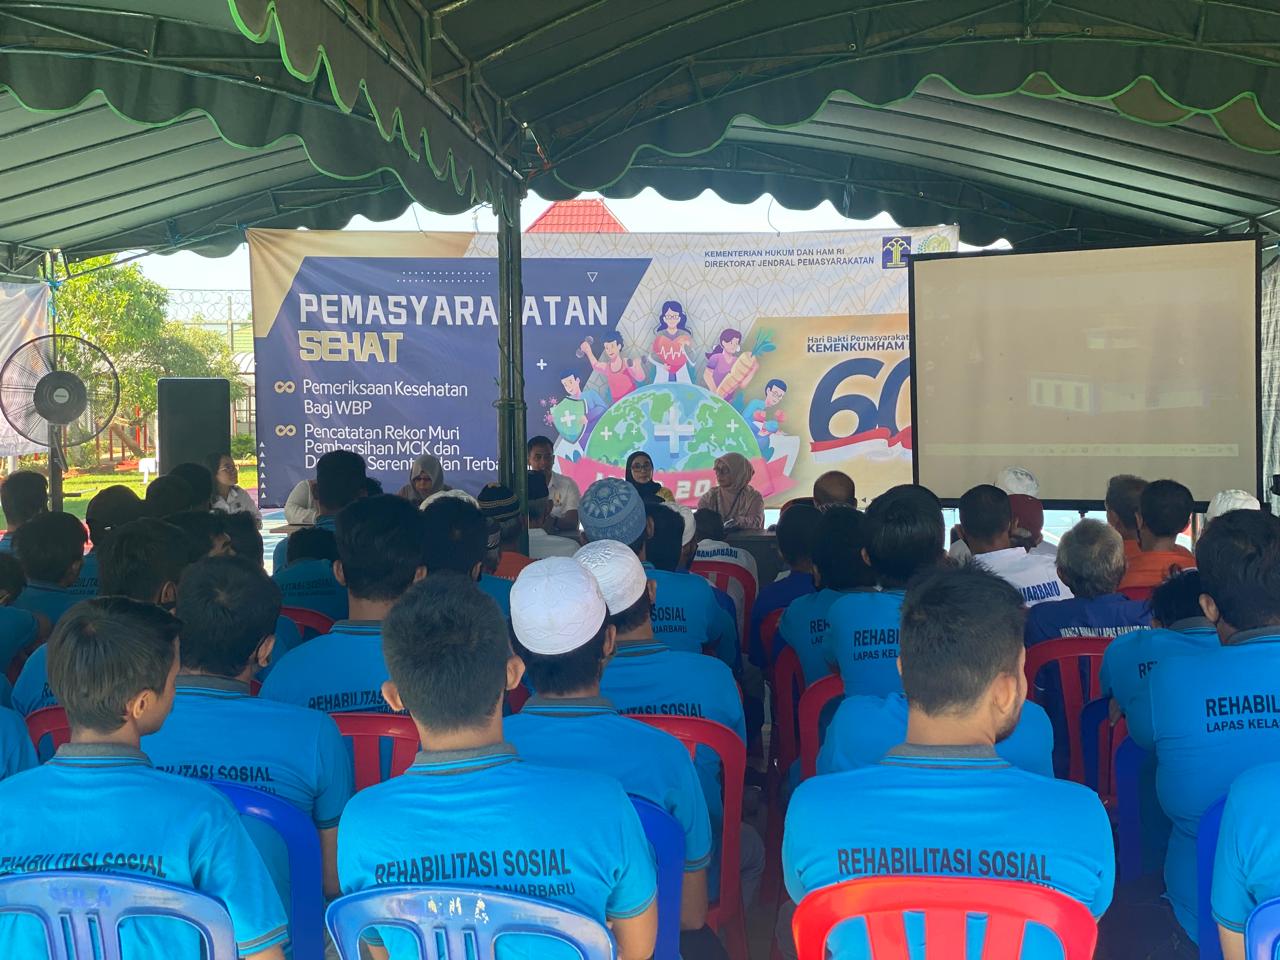 Wujudkan Pemasyarakatan Sehat, Lapas Banjarbaru dan Dinkes Banjarbaru Bekali Warga Binaan dengan Penyuluhan PHBS